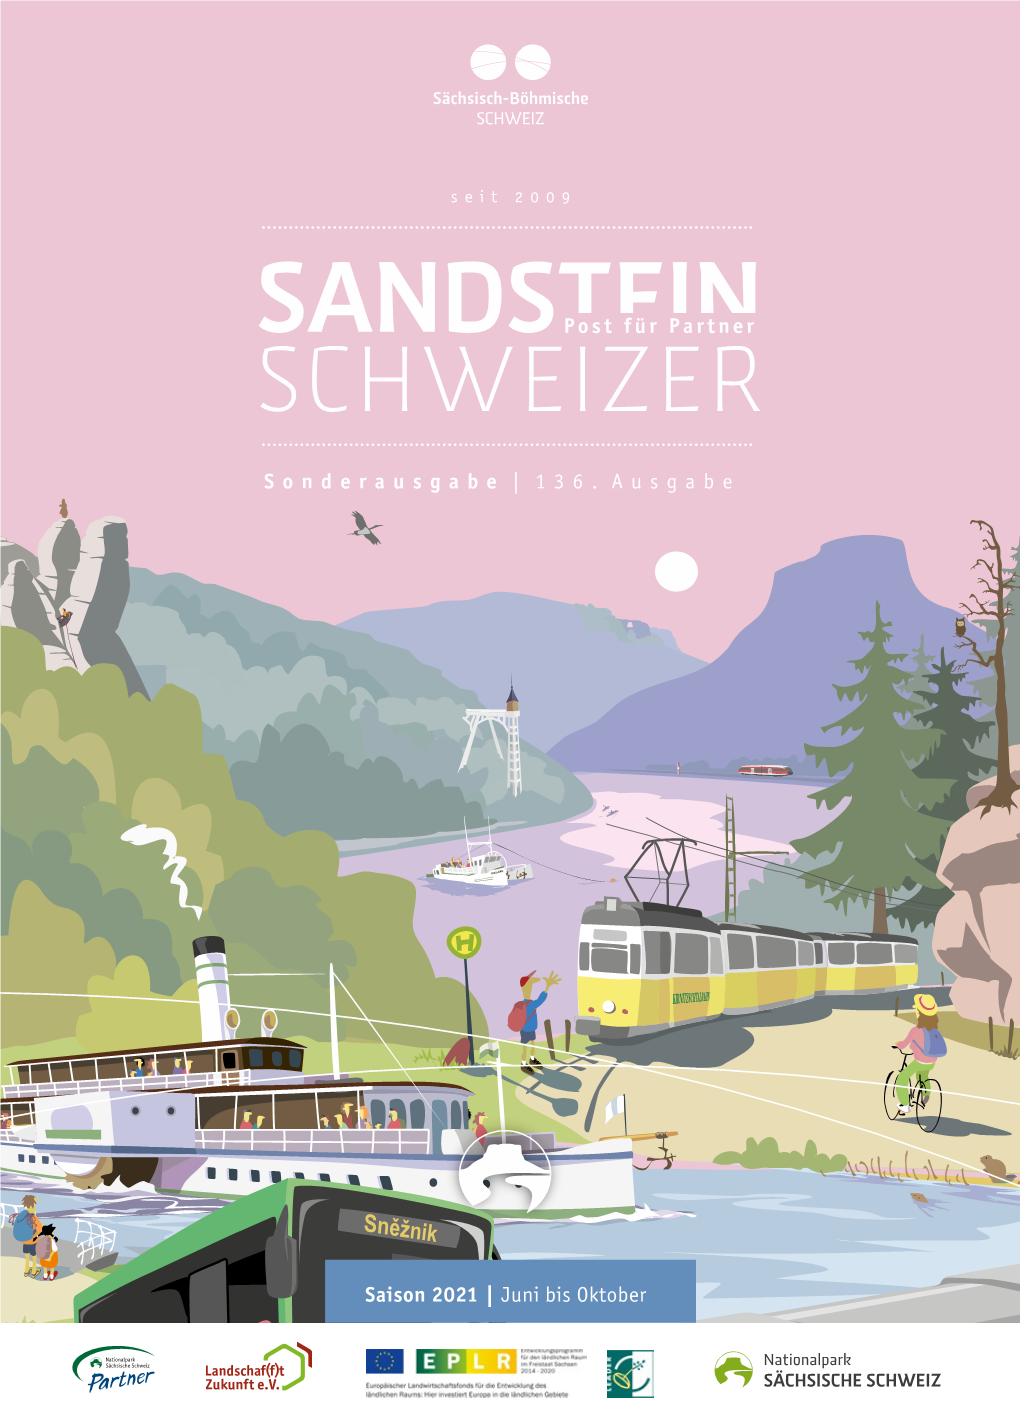 136. Sandsteinschweizer | Juli 2021 Nationalpark-Saechsische-Schweiz.De 136